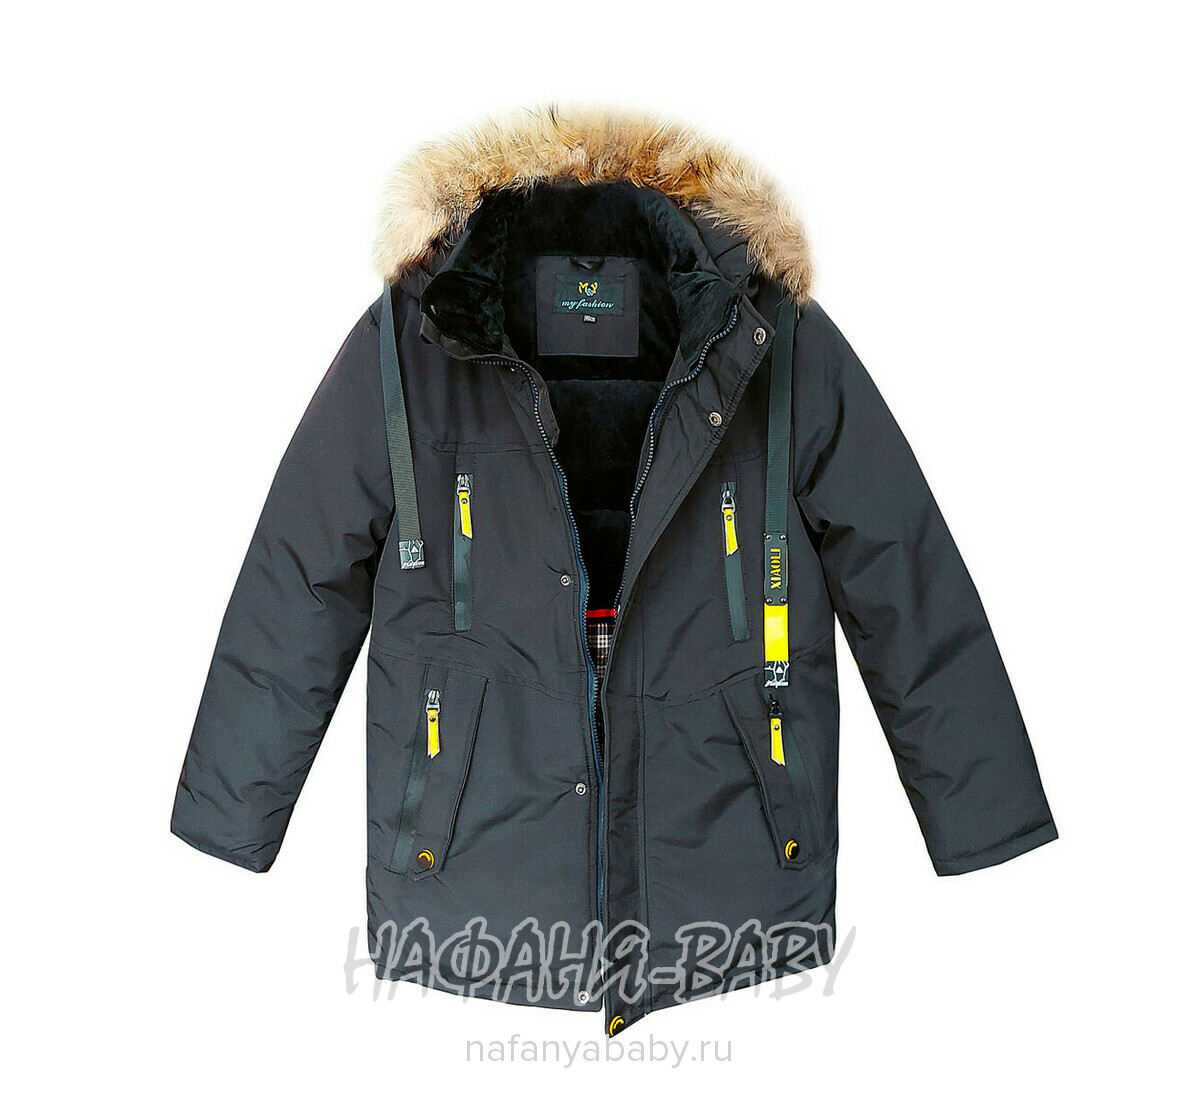 Зимняя куртка для мальчика арт: 8022, от 10 до 16 лет, цвет черный, оптом Китай (Пекин)